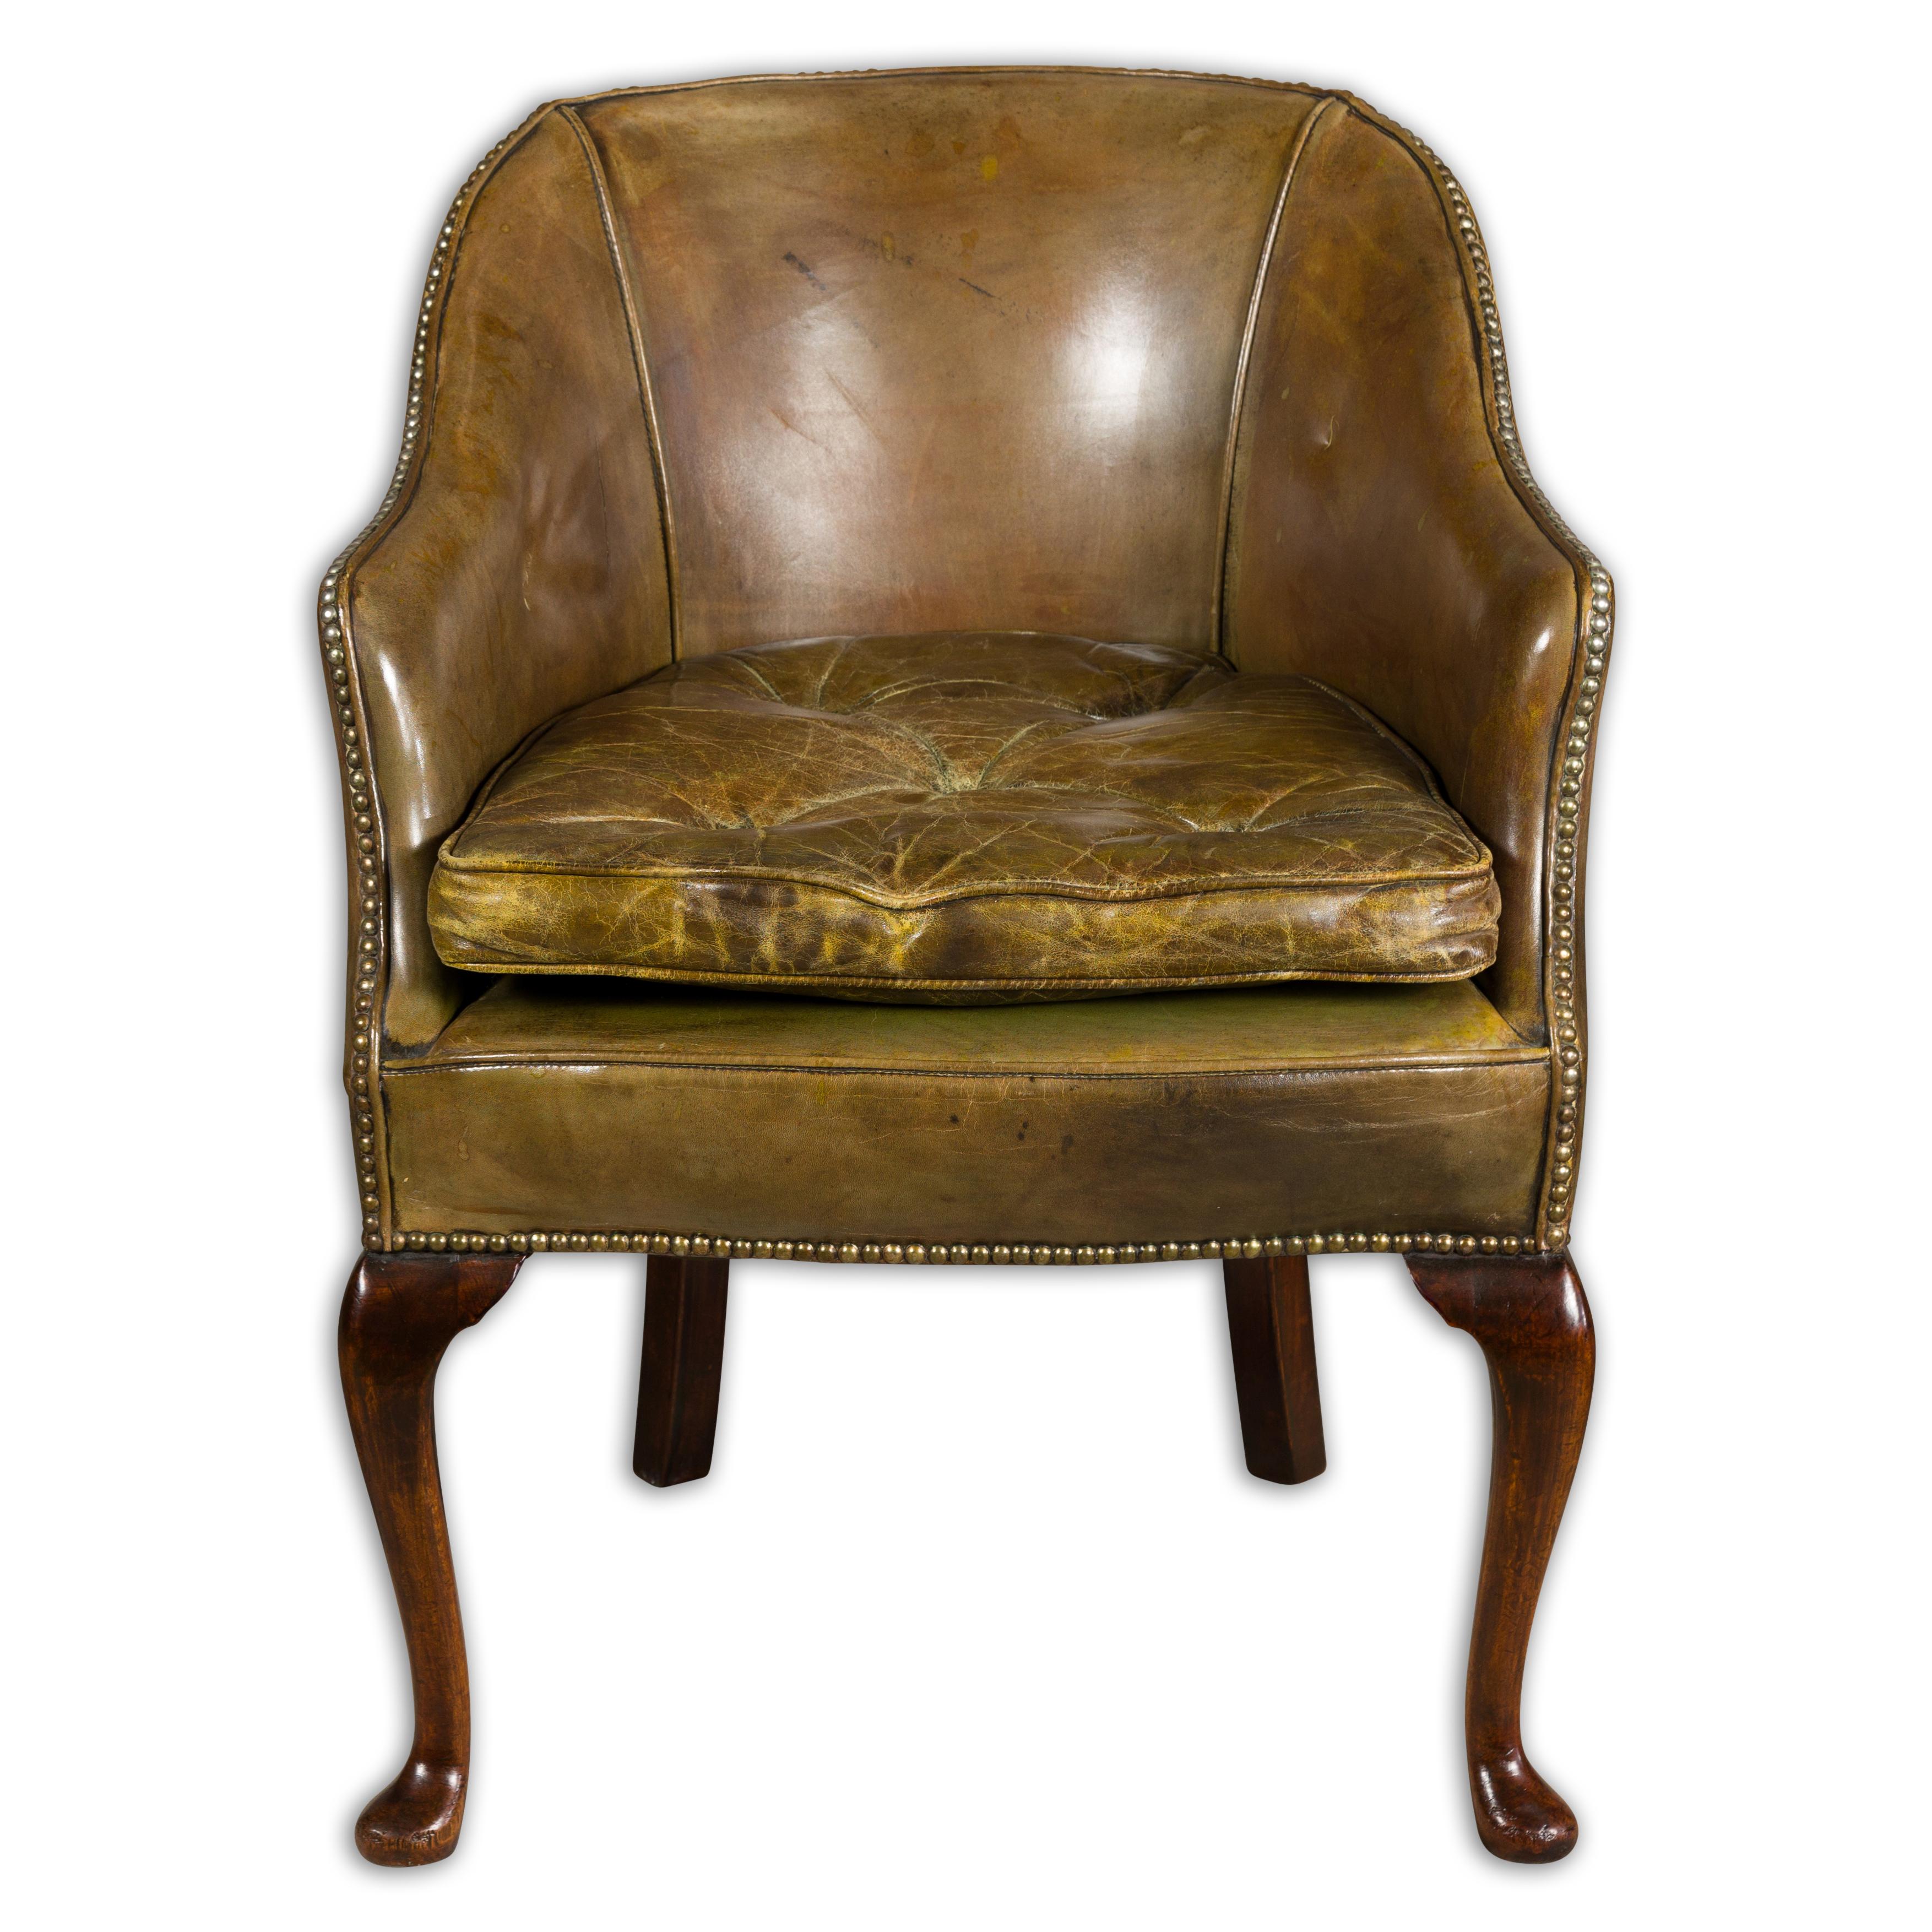 Englischer braun-grüner Lederstuhl um 1900-1920, mit geschnitzten Mahagonibeinen. Versetzen Sie sich mit diesem englischen braun-grünen Lederstuhl aus dem frühen 20. Jahrhundert (ca. 1900-1920) in die Vergangenheit. Dieses raffinierte Stück ist eine